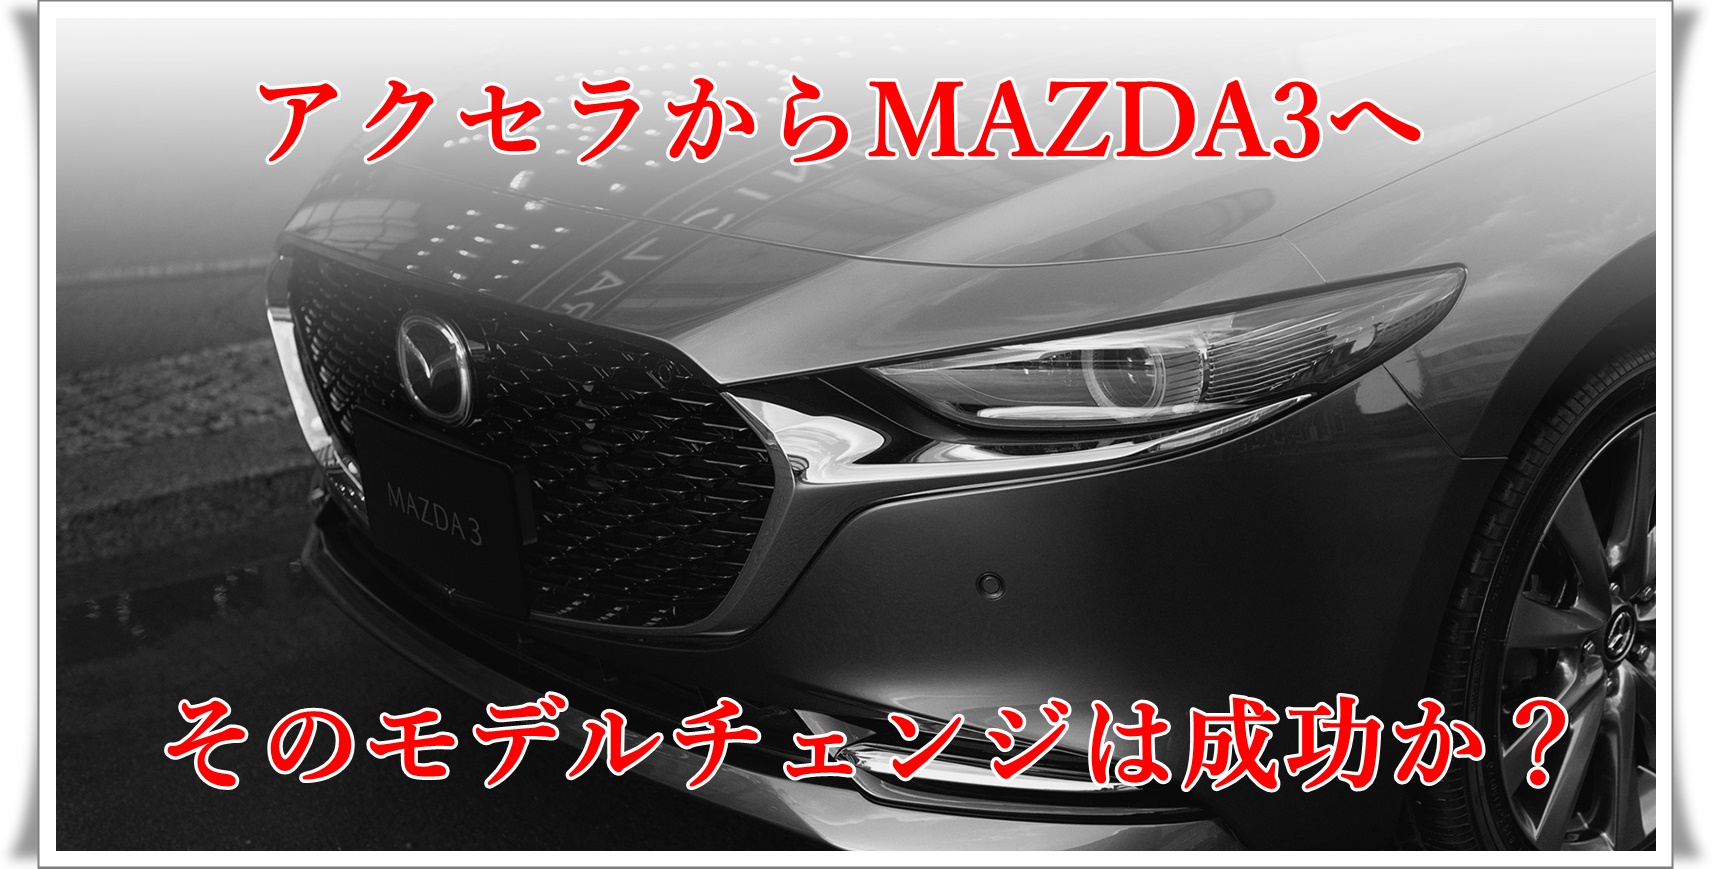 Mazda3セダンの最新情報 アクセラのモデルチェンジは成功か クルマの神様 車選びに悩む人が結局たどり着く人気情報サイト